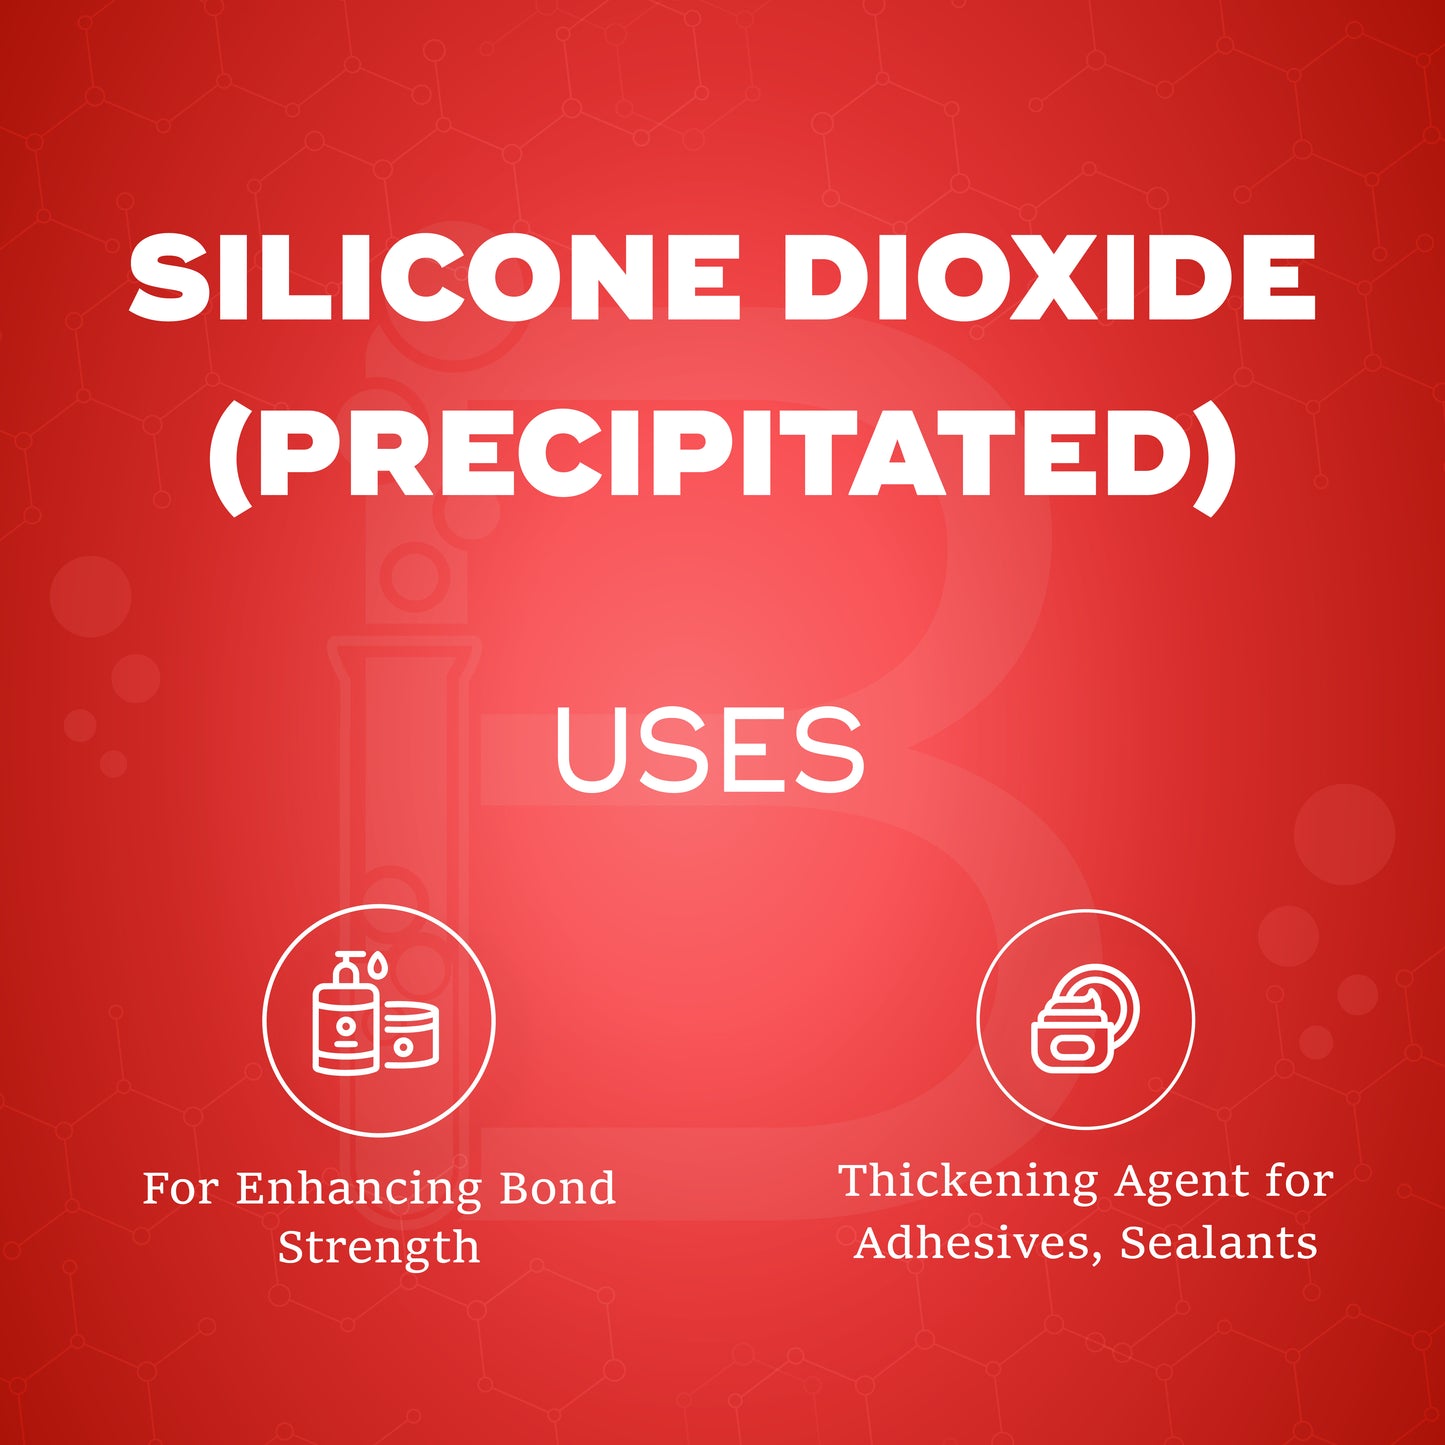 Silicone Dioxide (Precipitated)